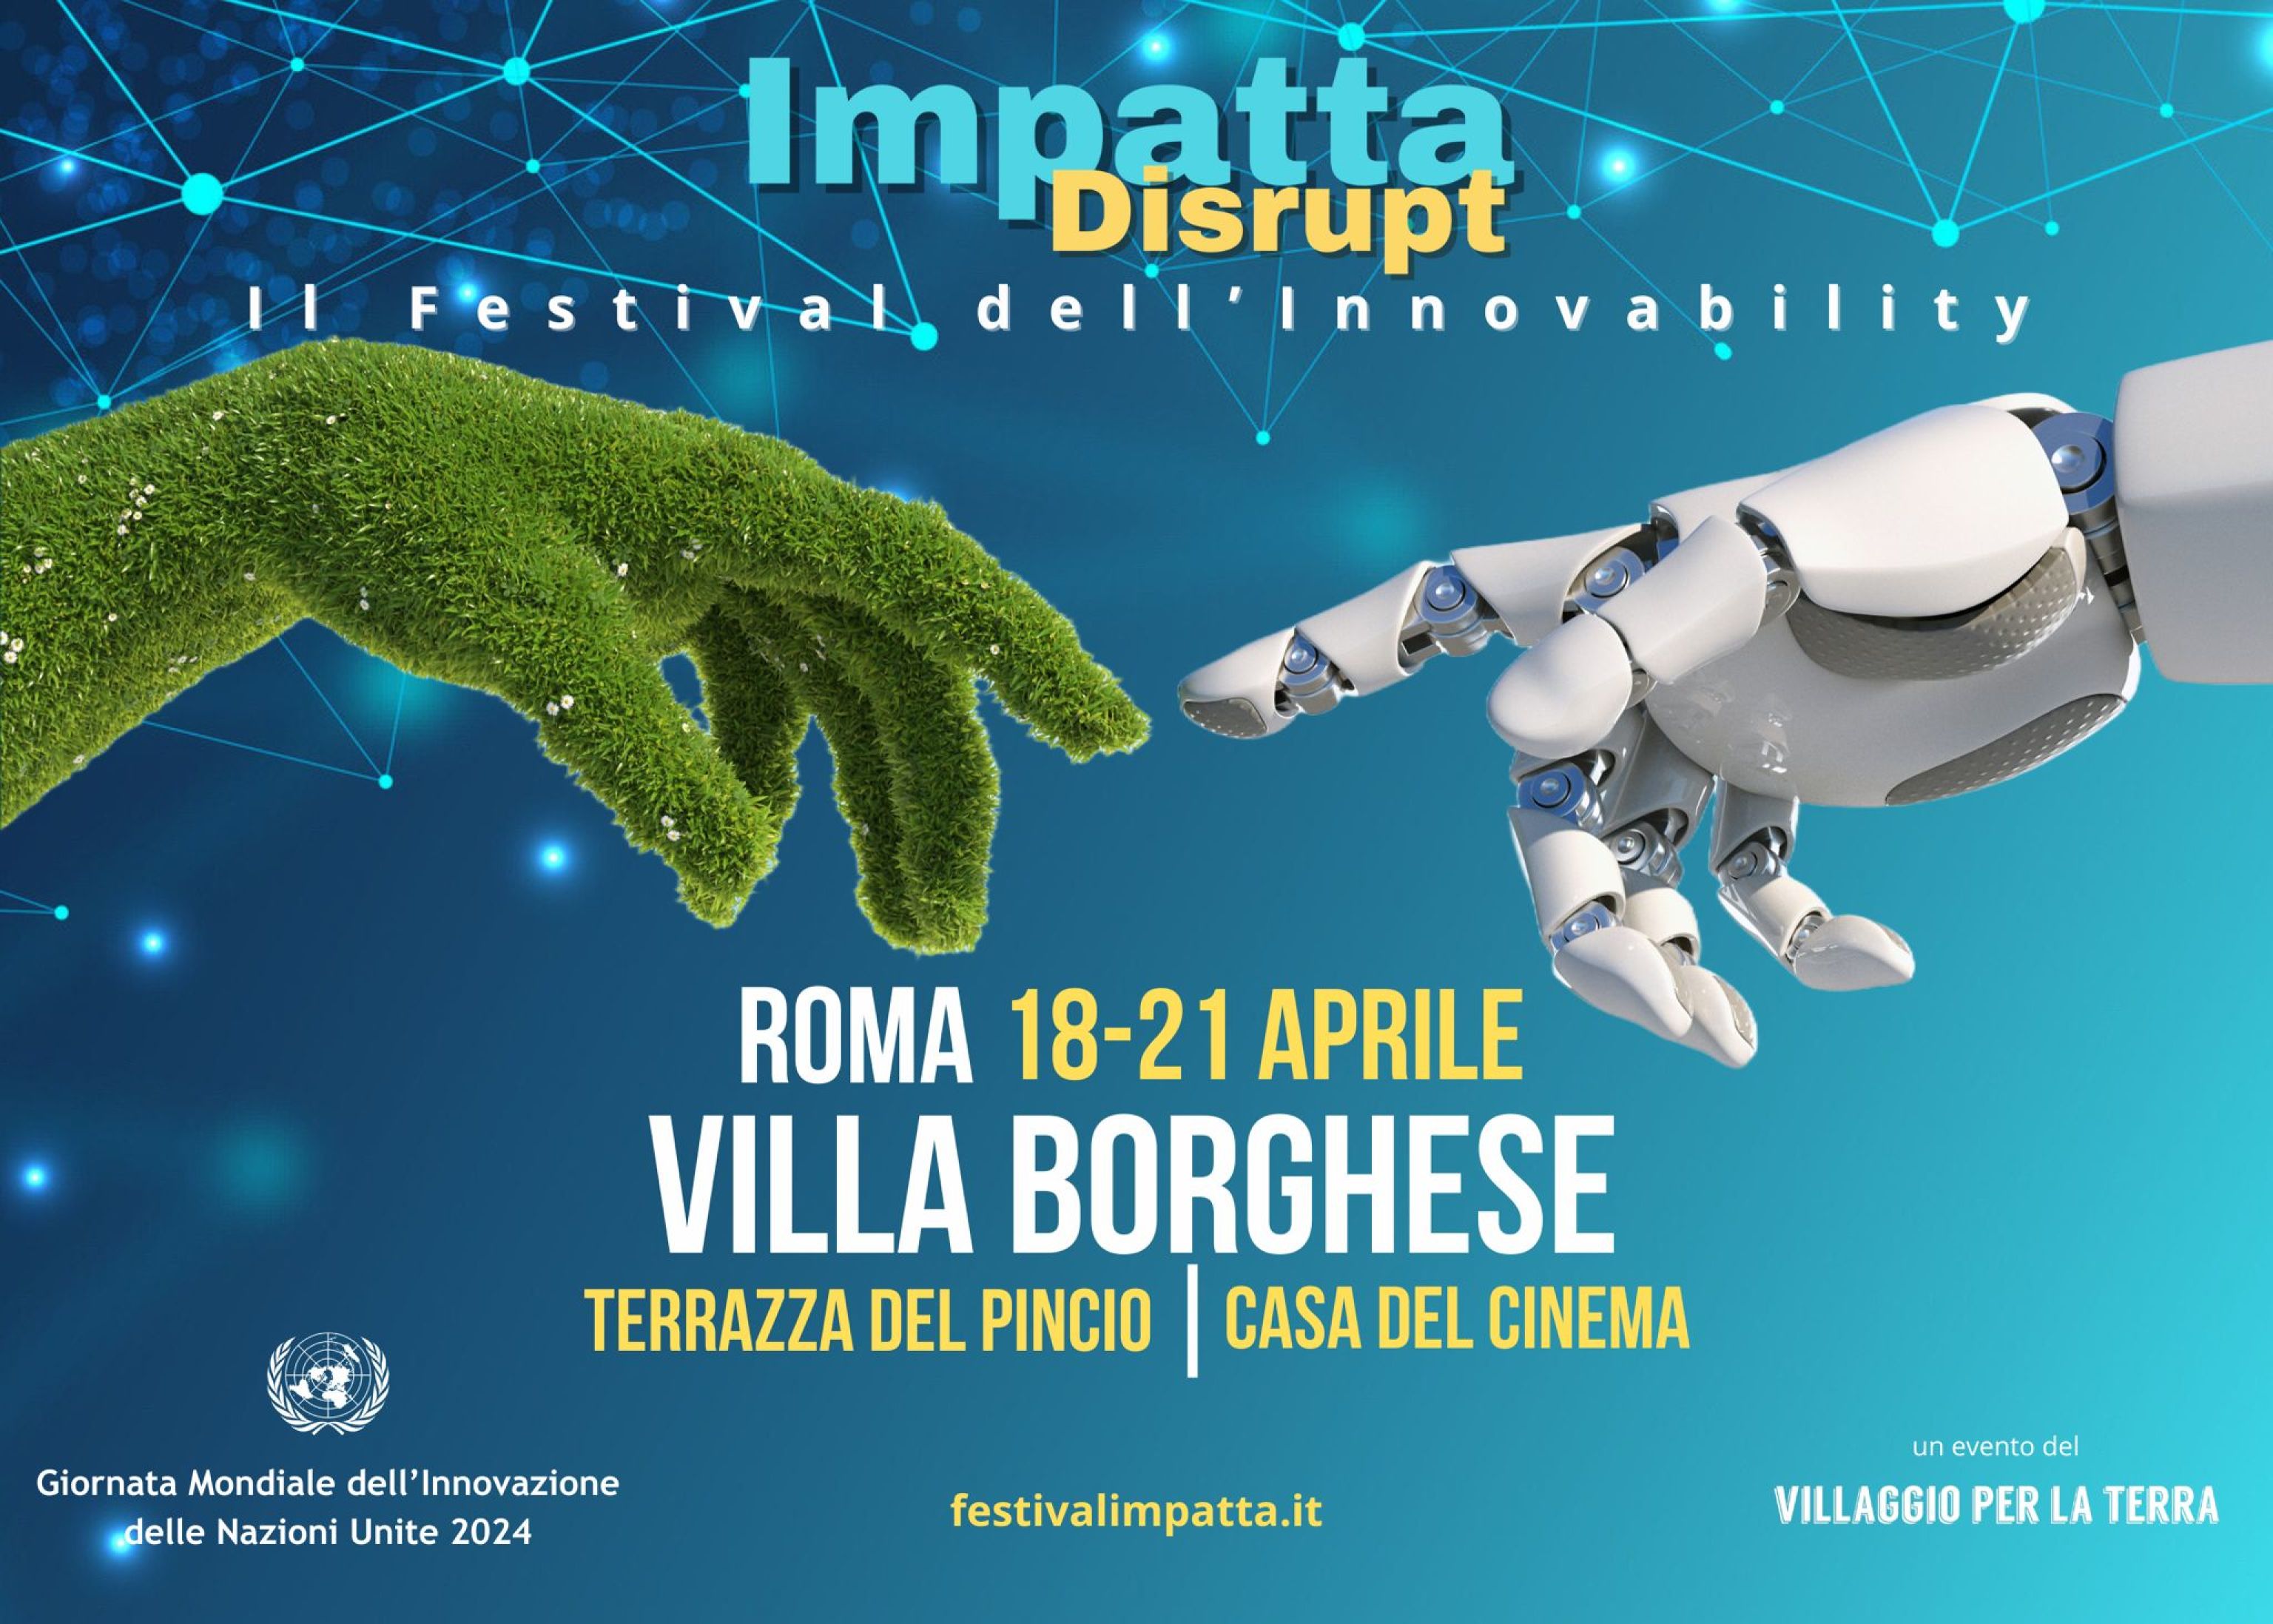 arriva impatta disrupt, il festival italiano dell'innovability